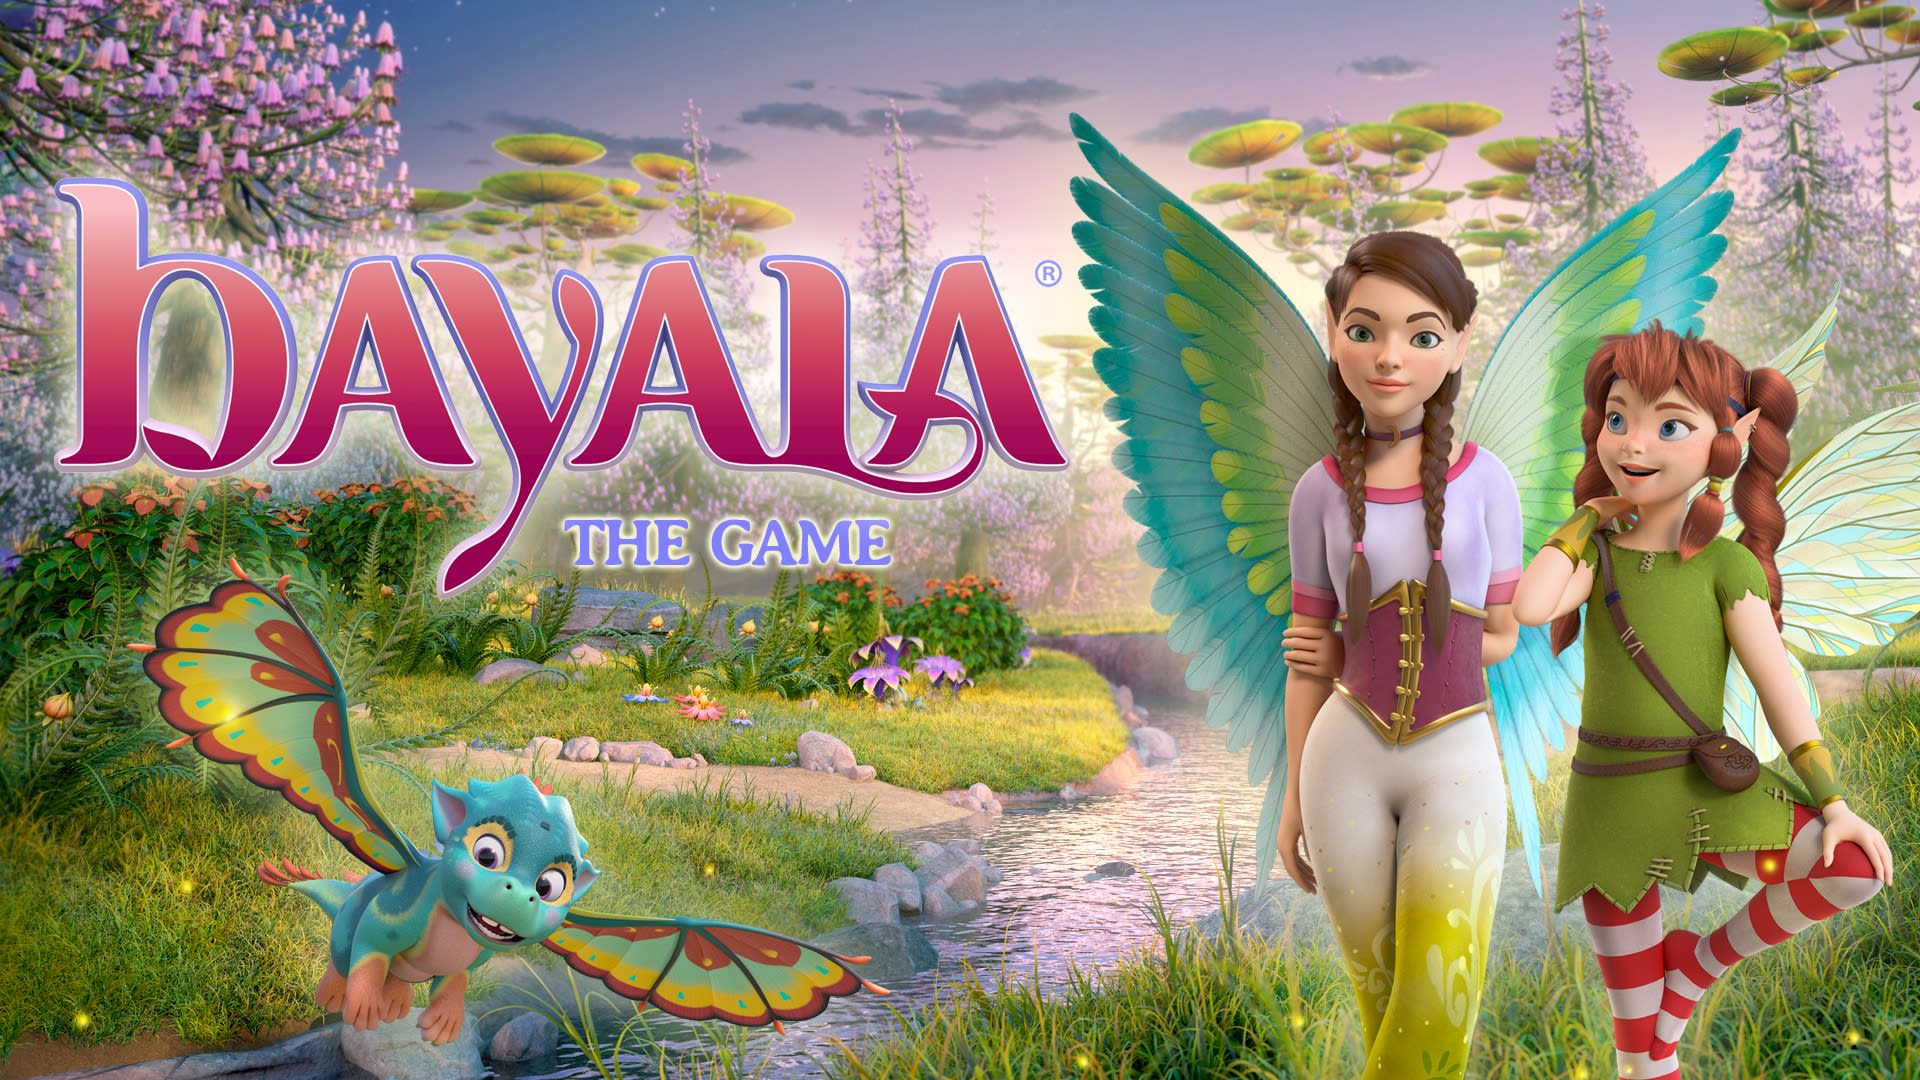 bayala - the game 1